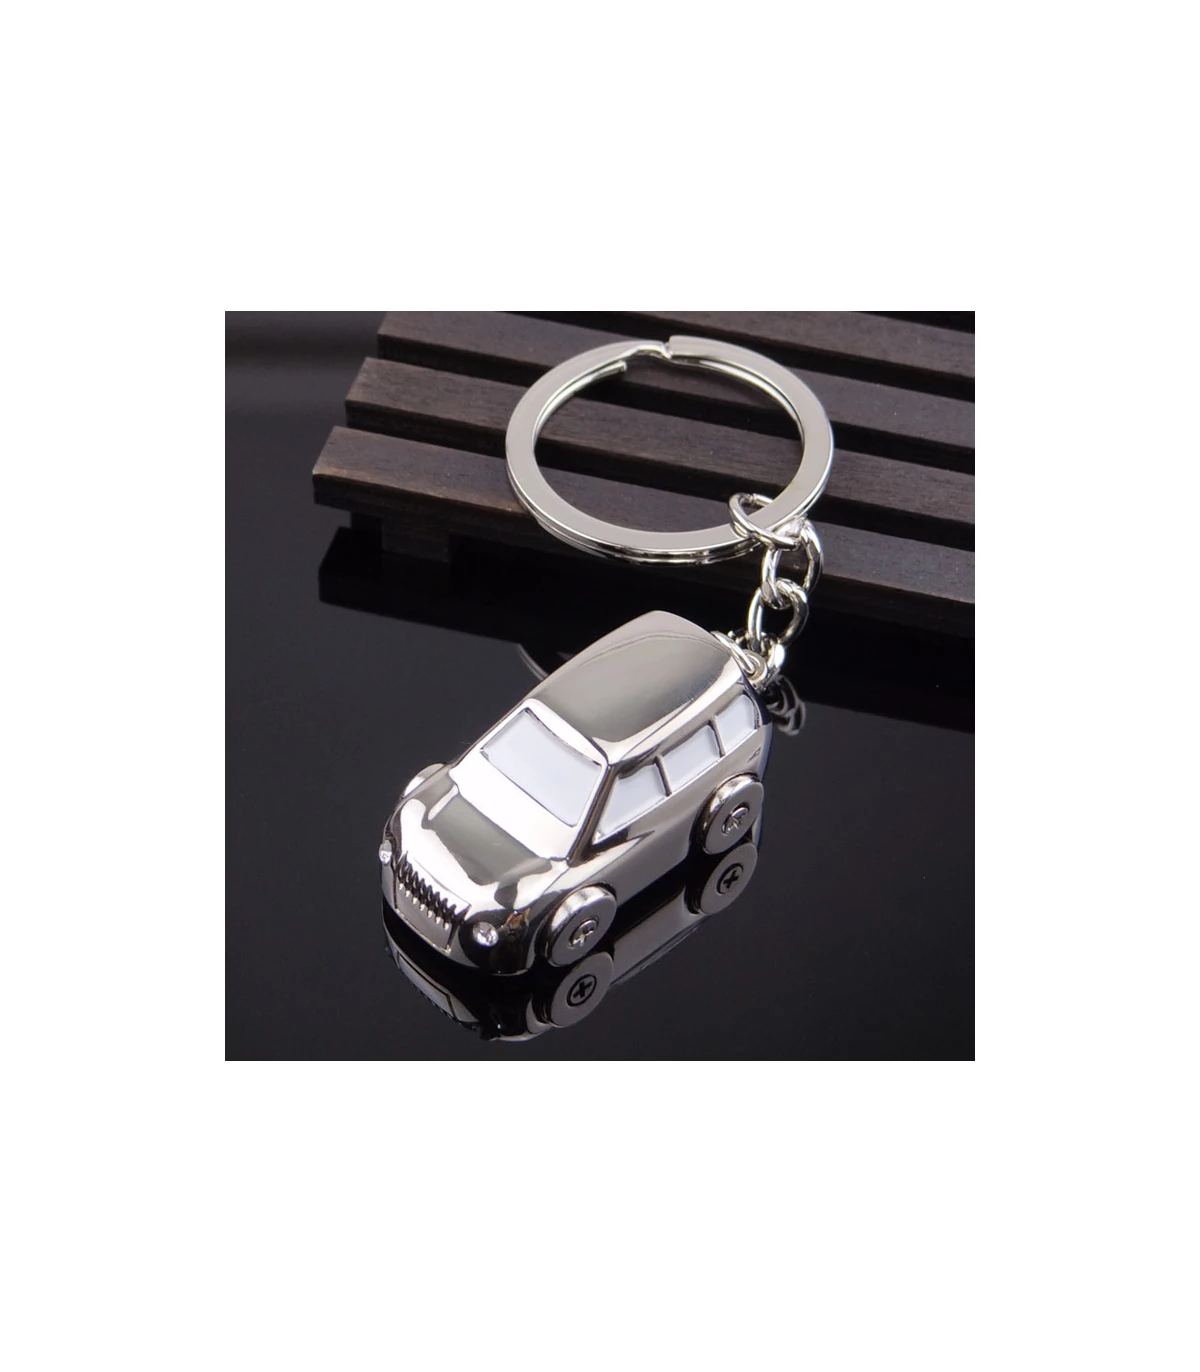 Cadeau auto : Porte-clés métal Concept-car - 8,72 €